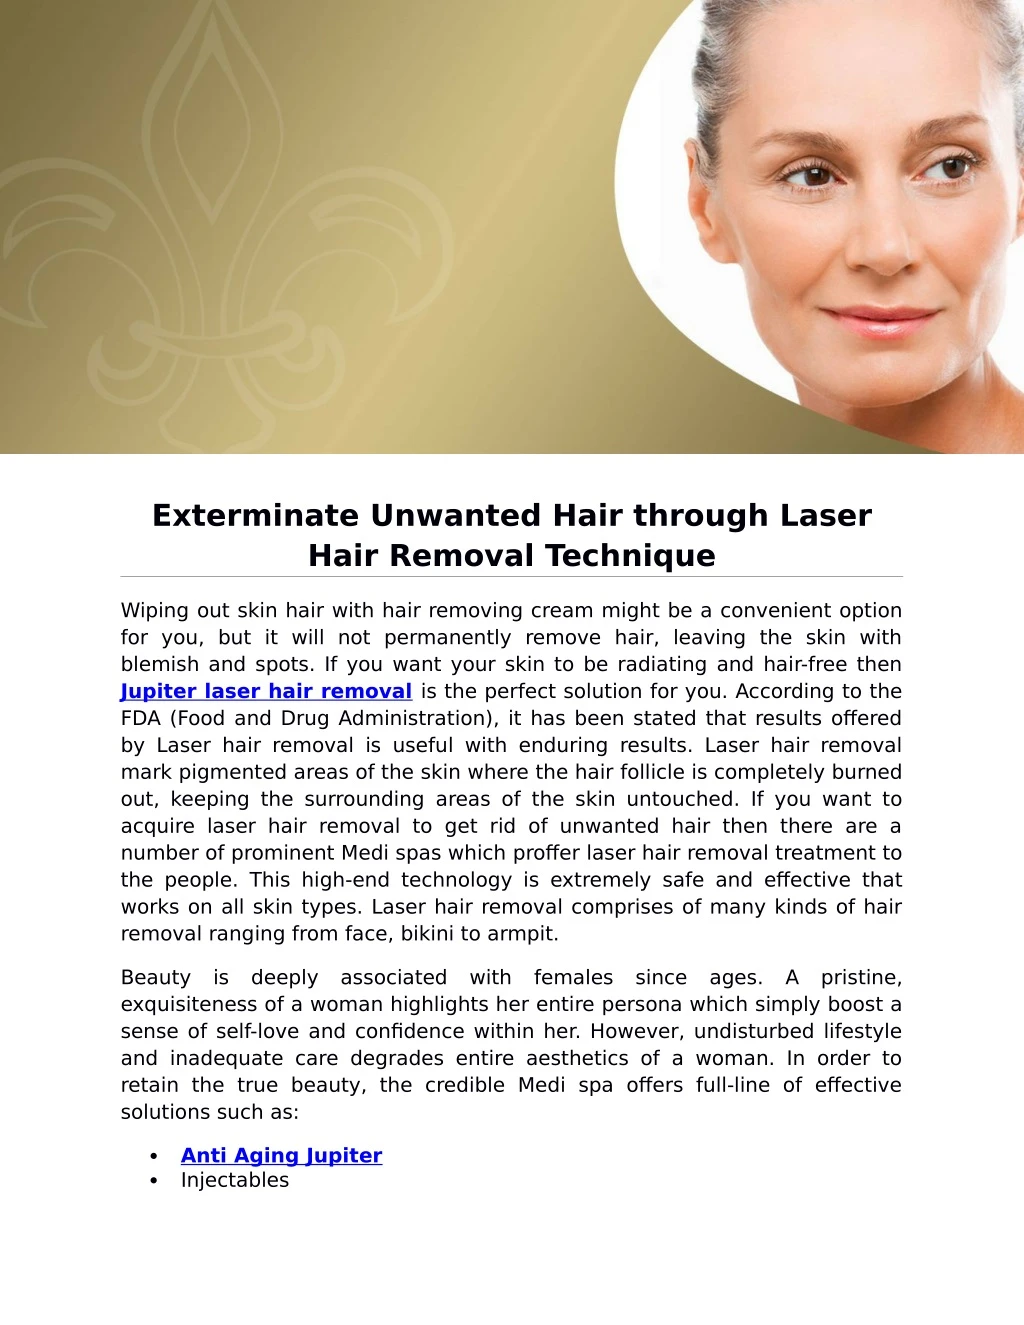 exterminate unwanted hair through laser hair